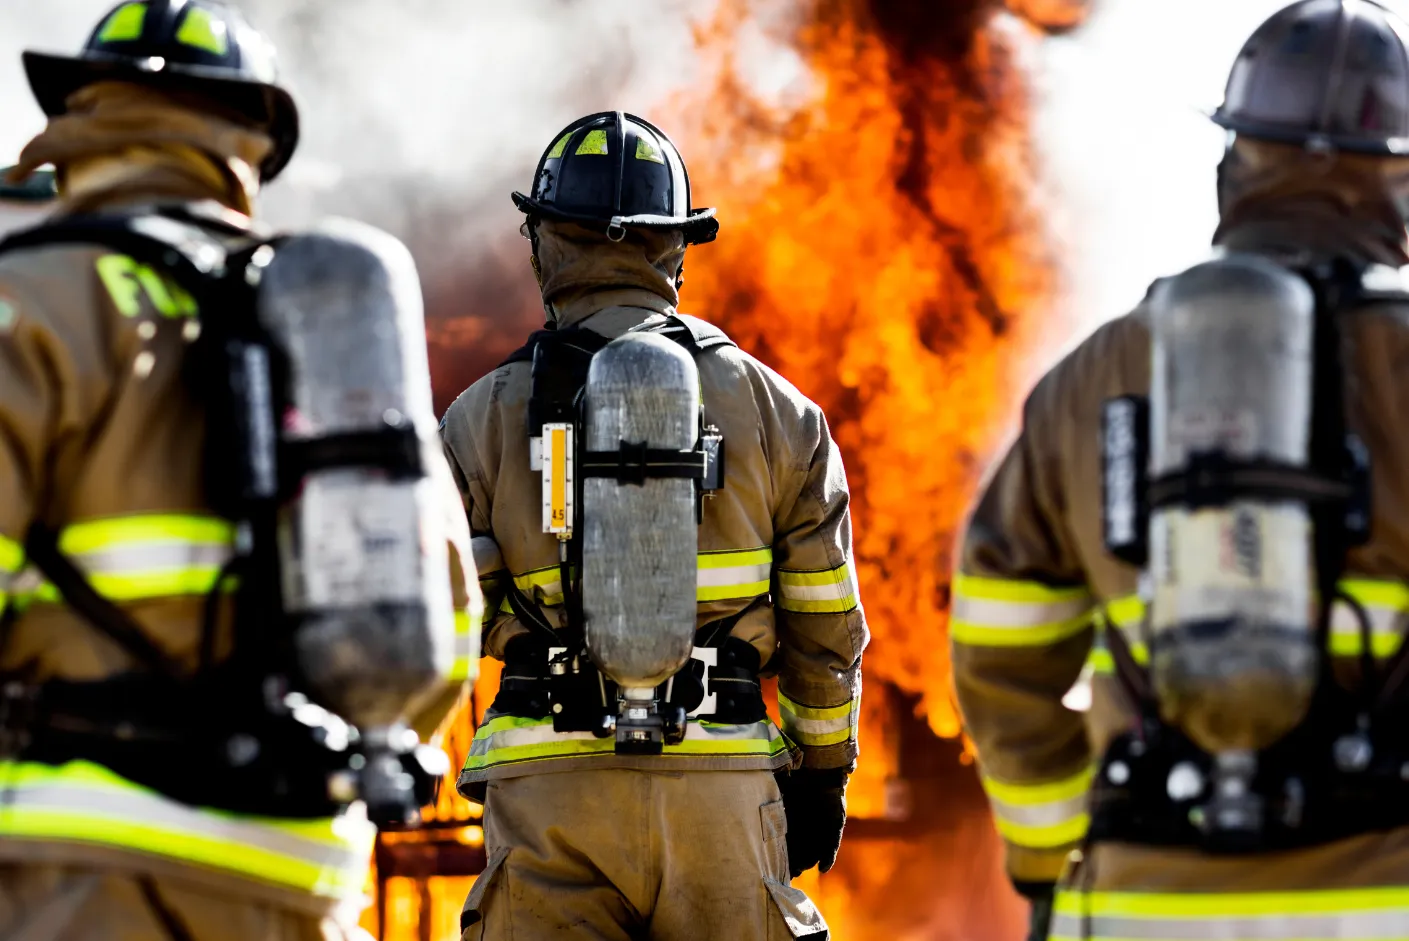 Stratégies pour réussir le concours pompier et devenir un pompier professionnel